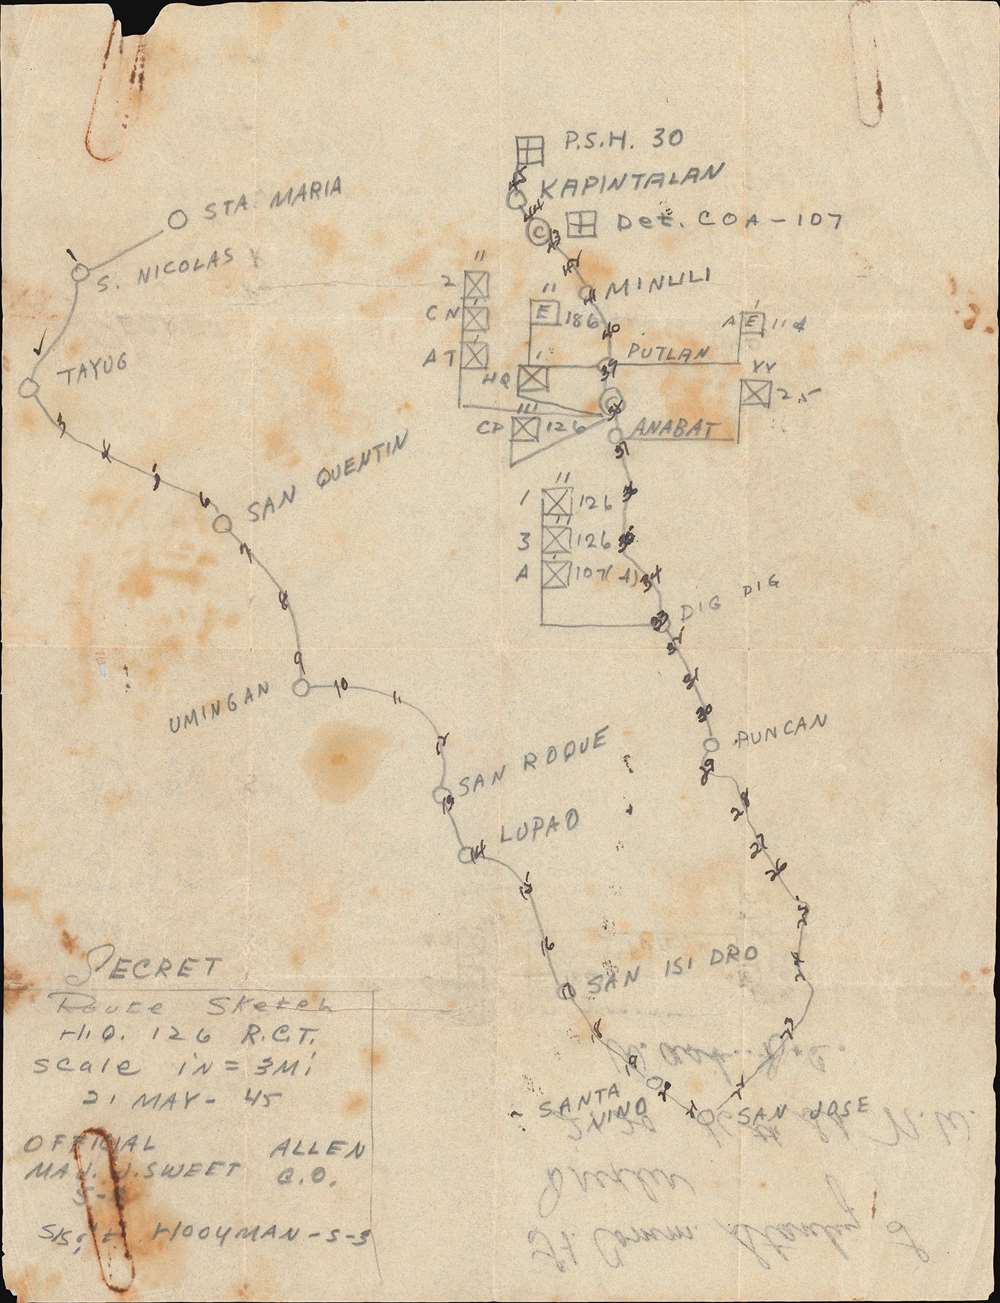 SECRET Route Sketch H.Q. 126 R.C.T. - Main View